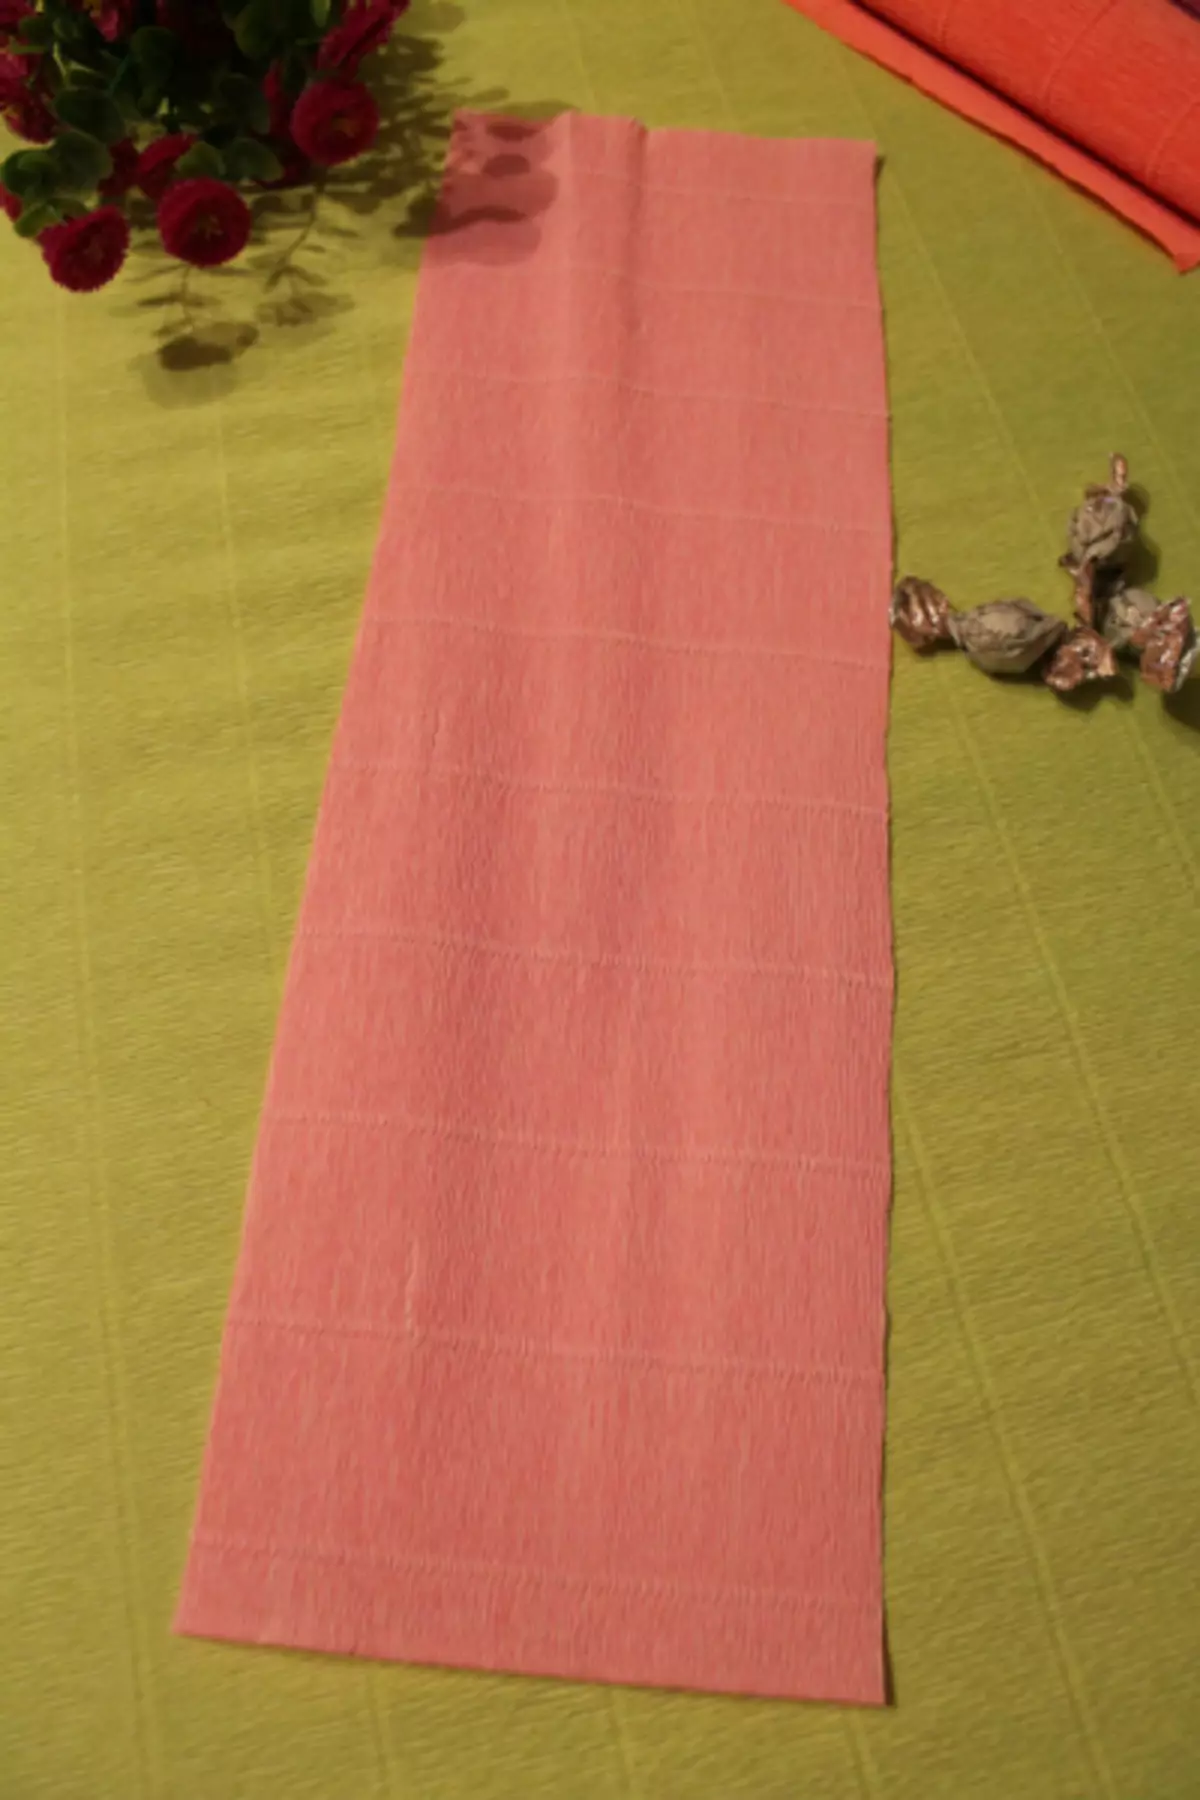 ಬಿಗಿನರ್ಸ್ ಸಿಹಿ ವಿನ್ಯಾಸ: ವೀಡಿಯೊದೊಂದಿಗೆ ಸಿಹಿತಿಂಡಿಗಳು ಮಾಸ್ಟರ್ ವರ್ಗ ಪುಷ್ಪಗುಚ್ಛ